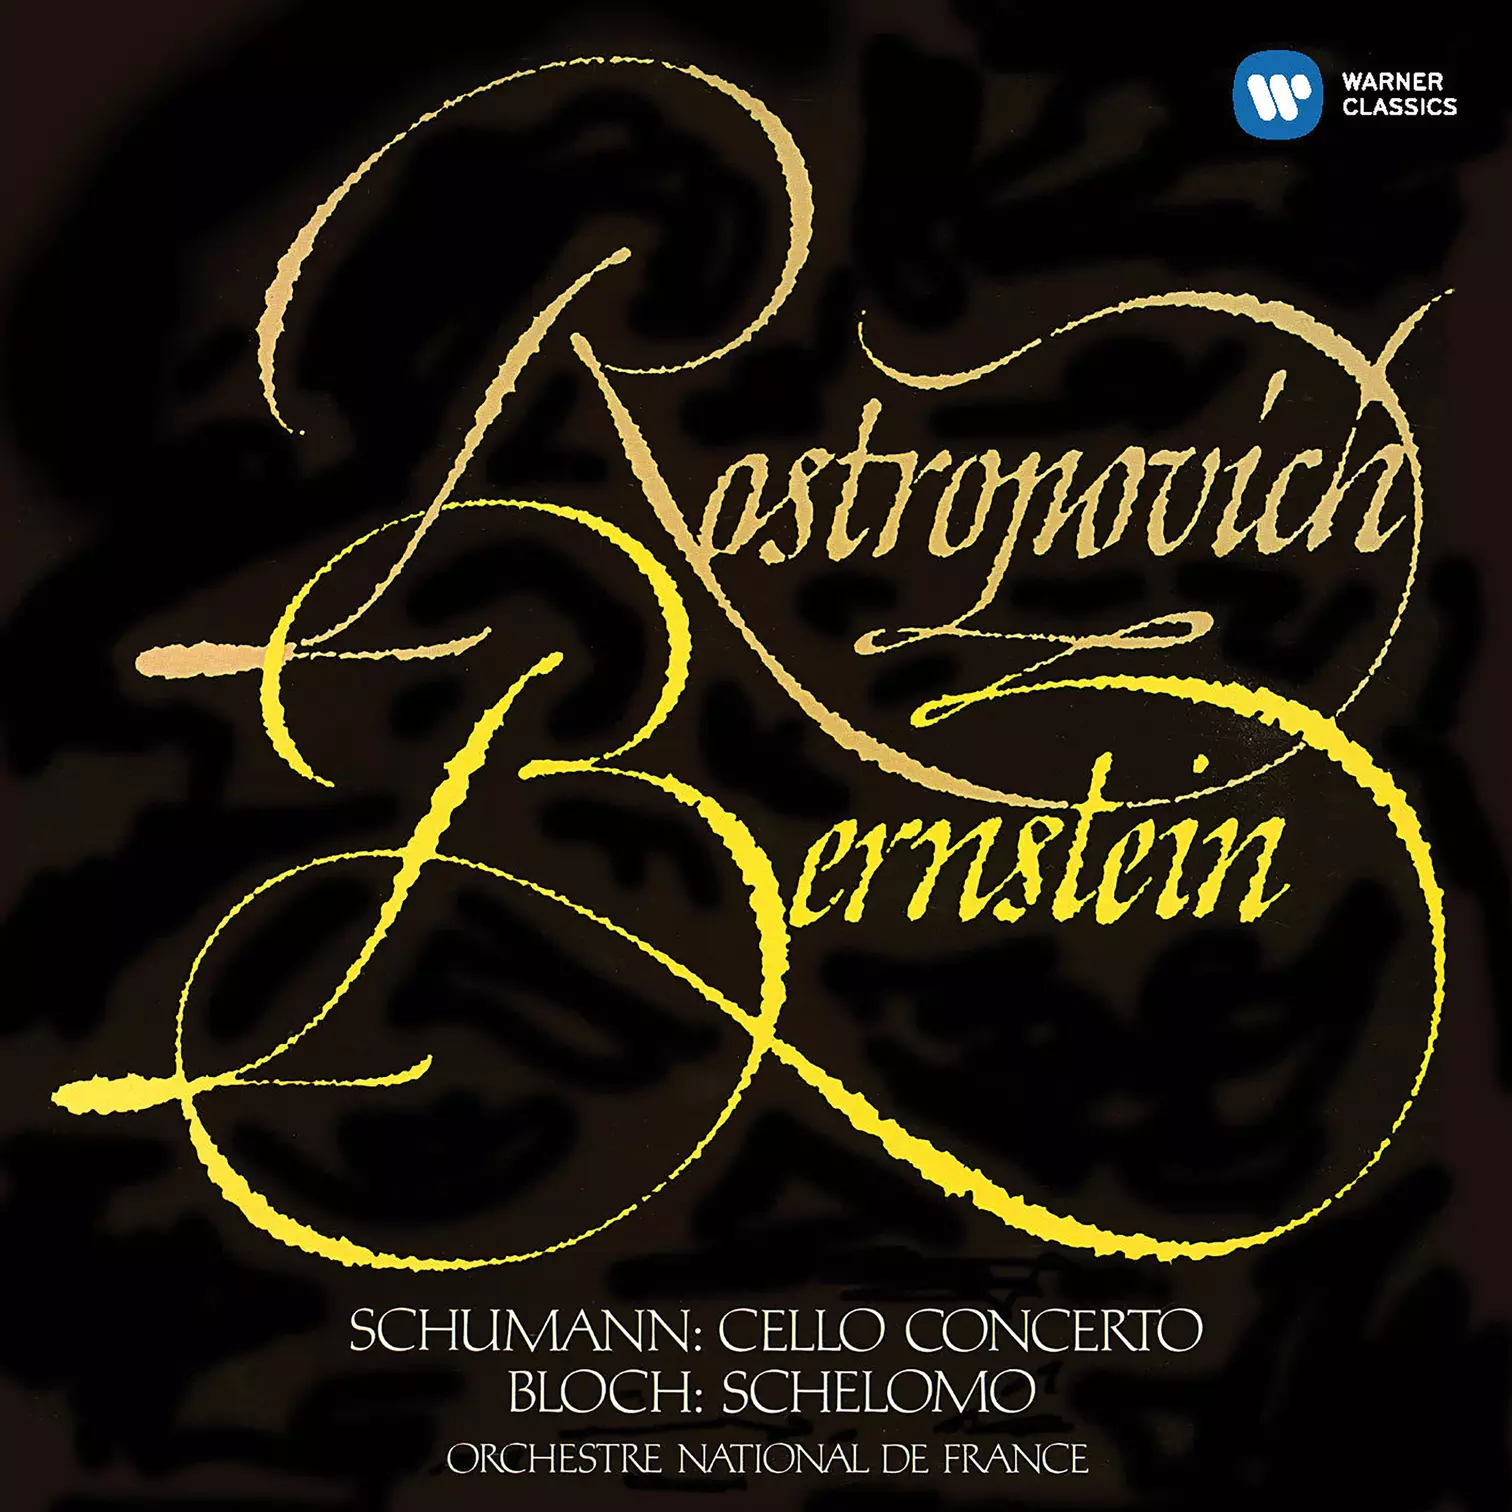 Schumann: Cello Concerto, Bloch: Schelomo